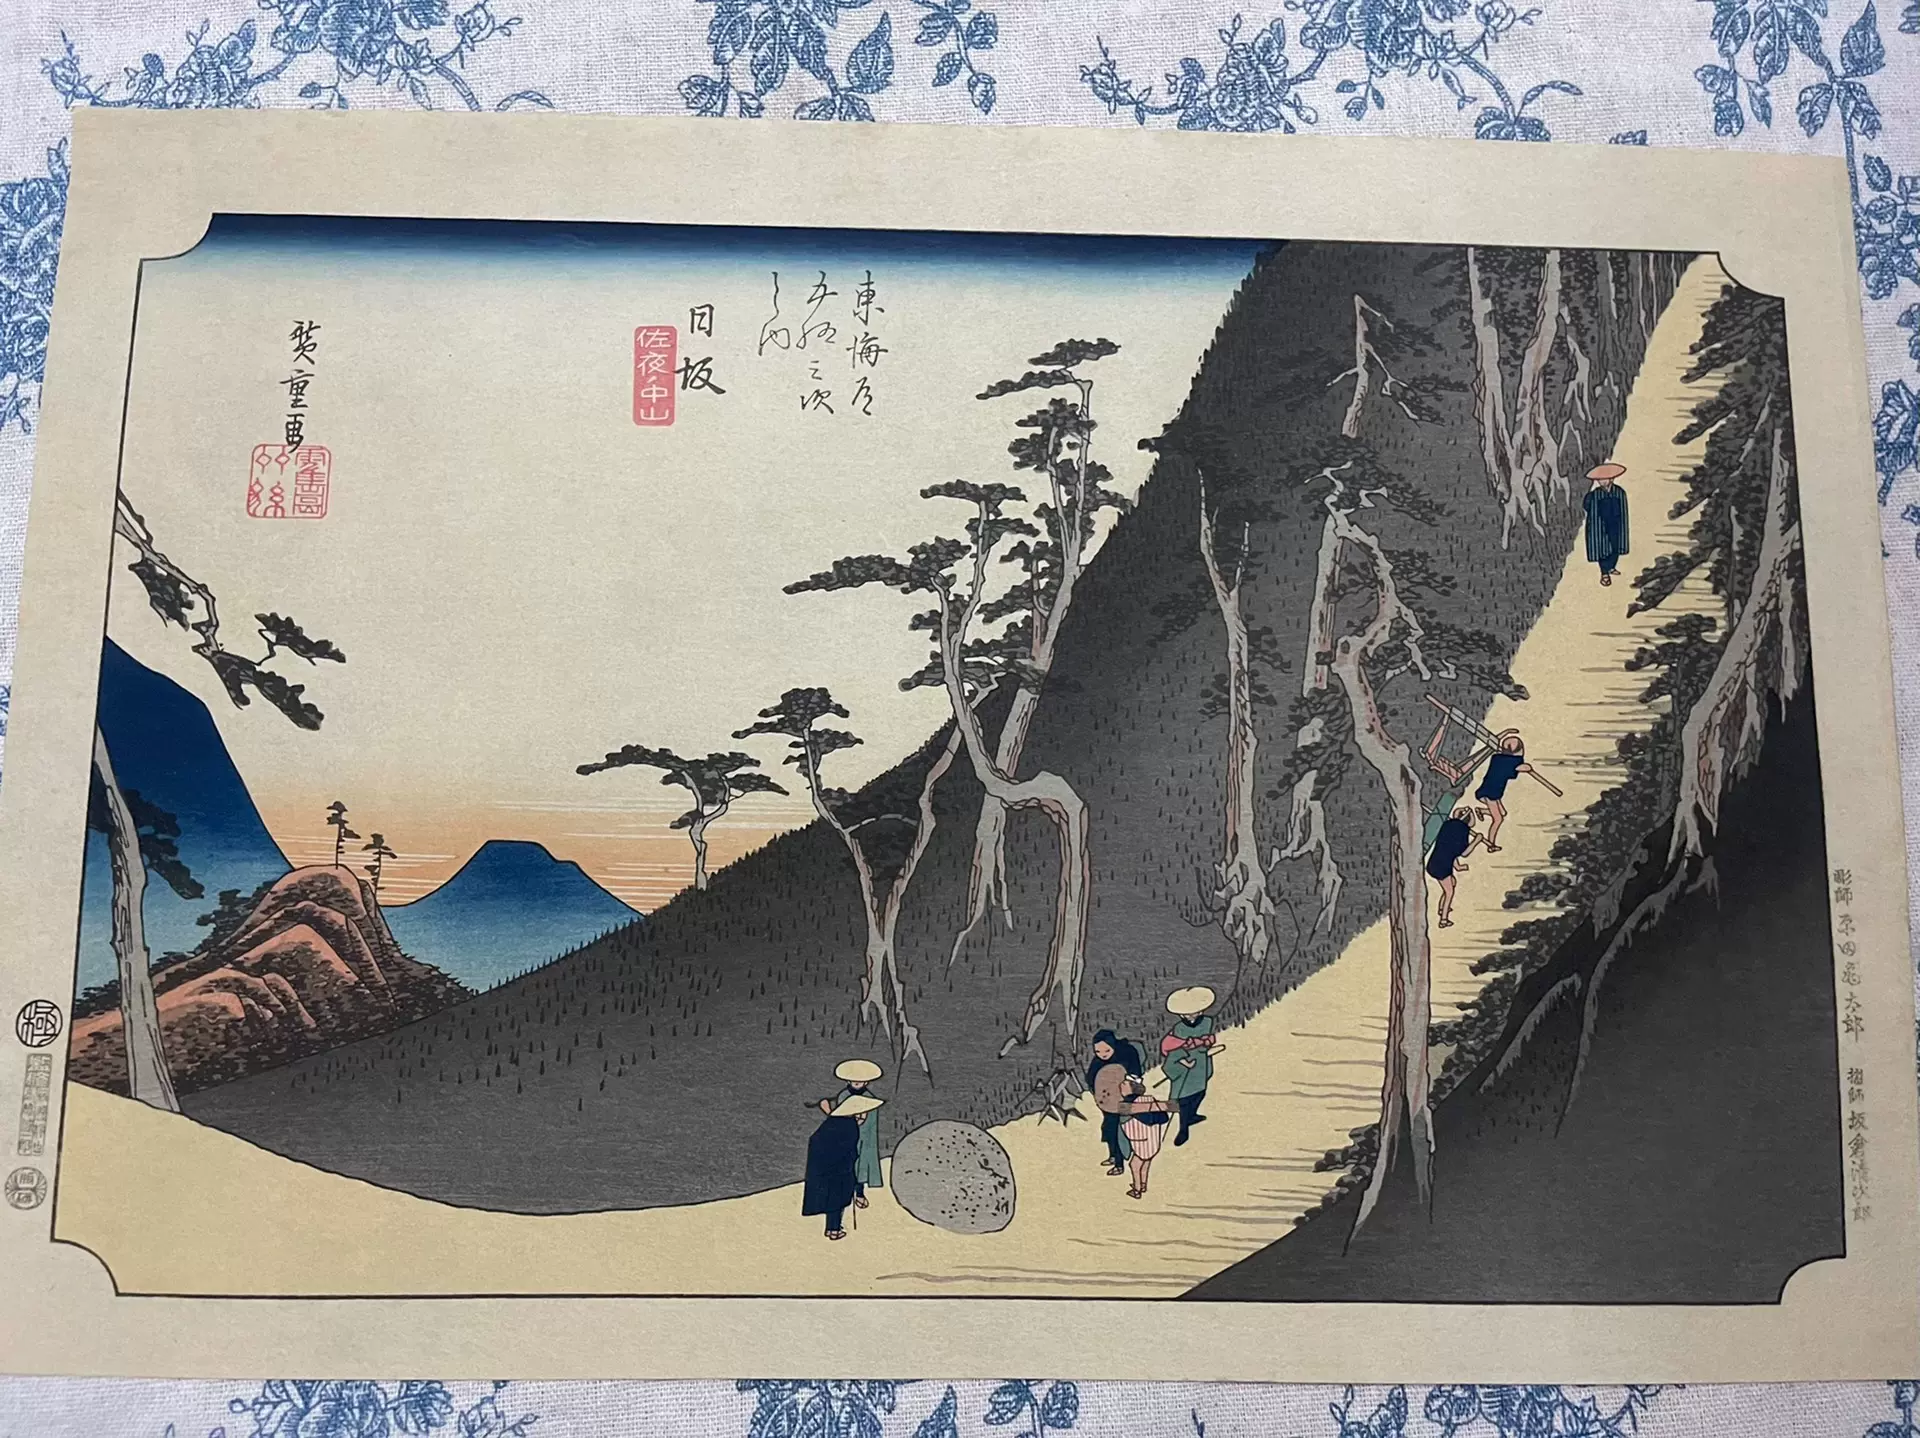 高見澤研究所 保永堂版 廣重東海道五十三次 浮世絵 参考書 木版画 風景 